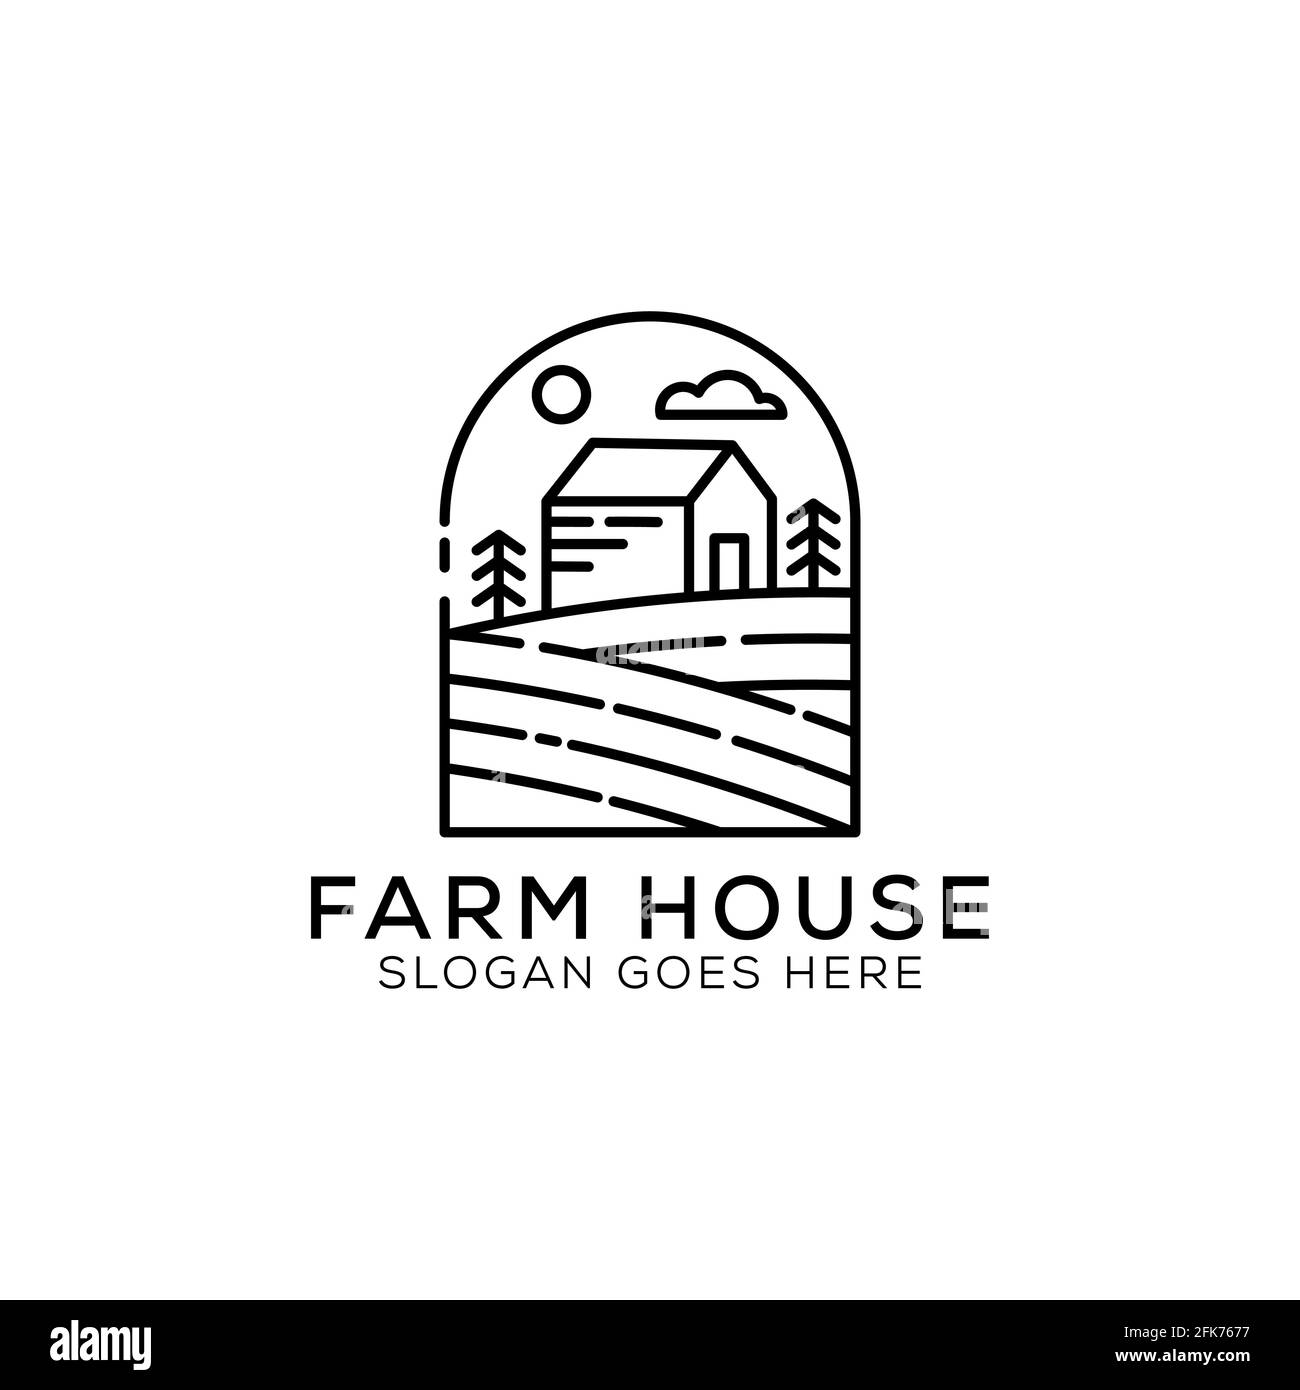 Illustrazione del design del logo Outline Farm House. Vettore paesaggistico per prodotti naturali di fattoria. Icona del logo del profilo Illustrazione vettoriale. Illustrazione Vettoriale